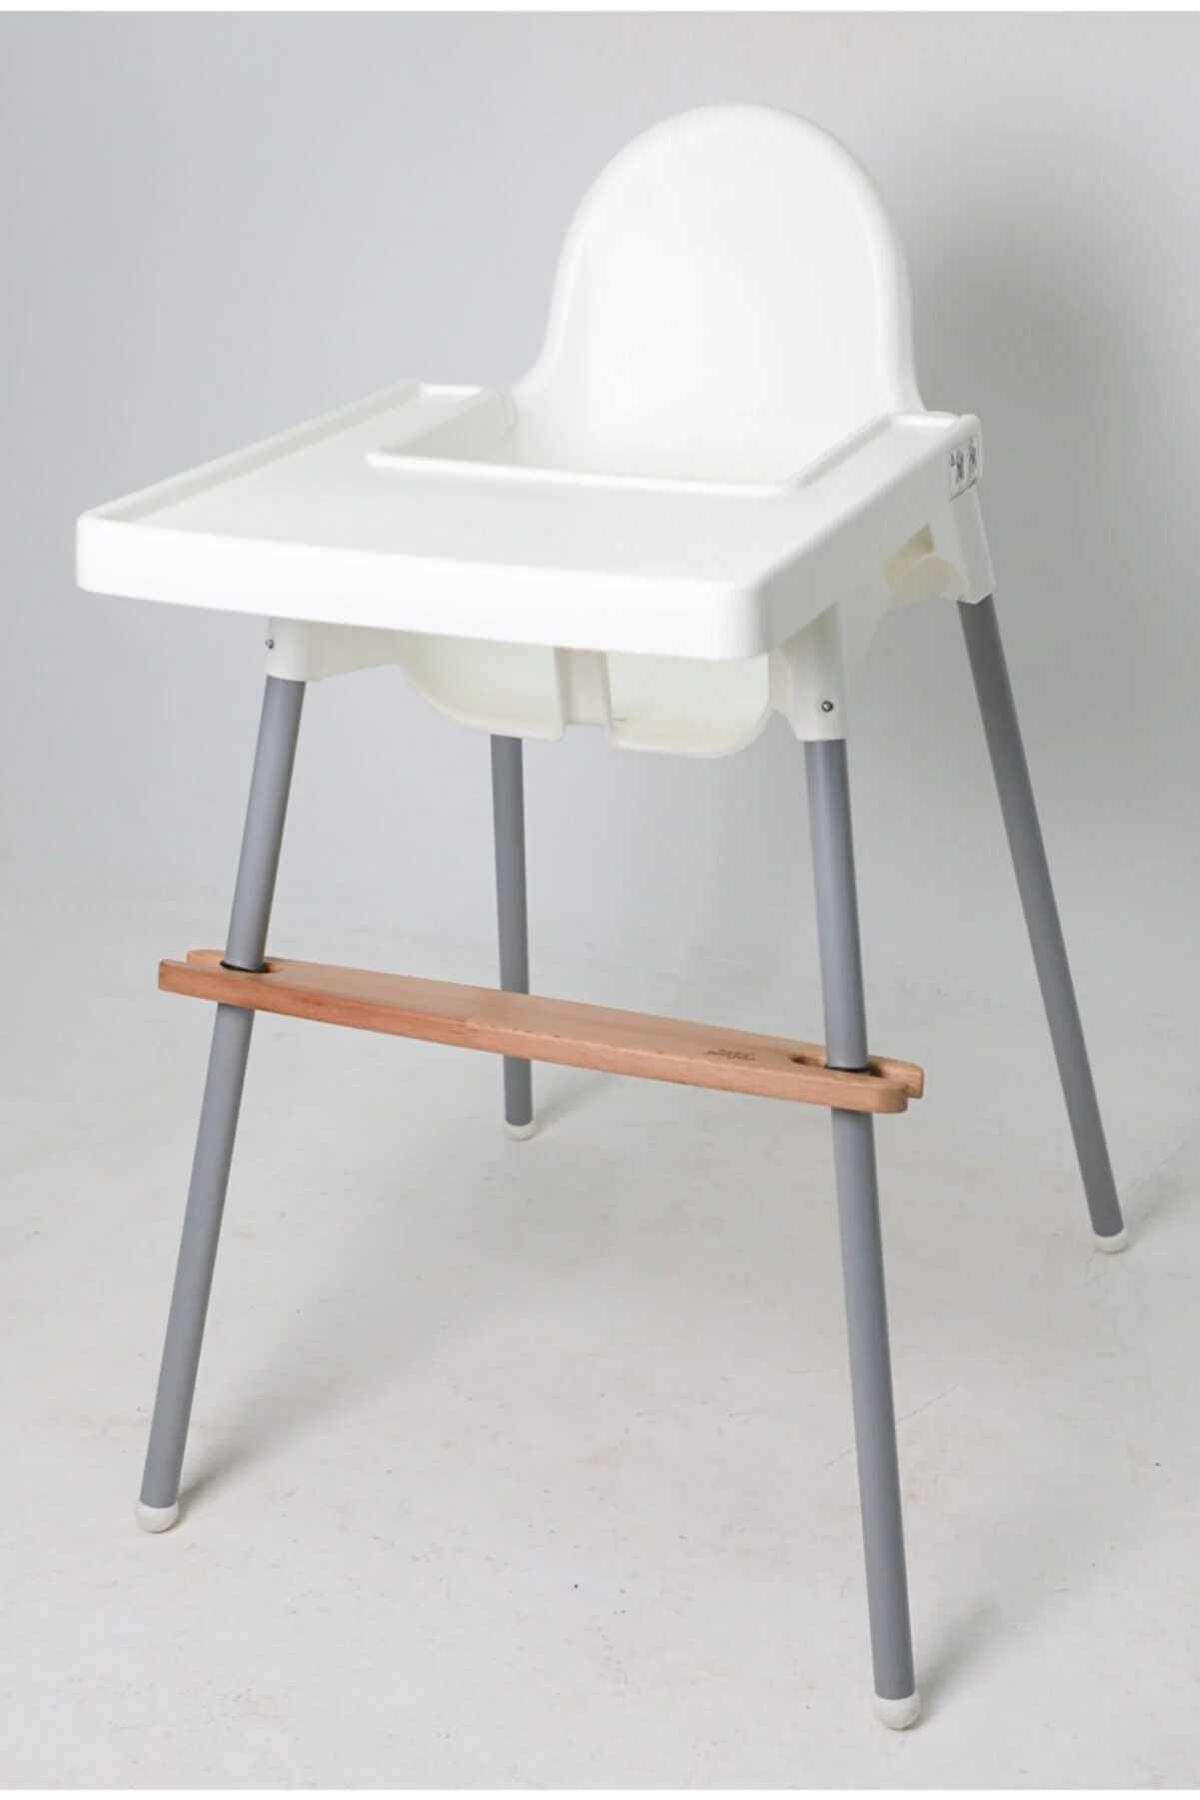 زیرپایی کودک سازگار با صندلی غذا کد.1001